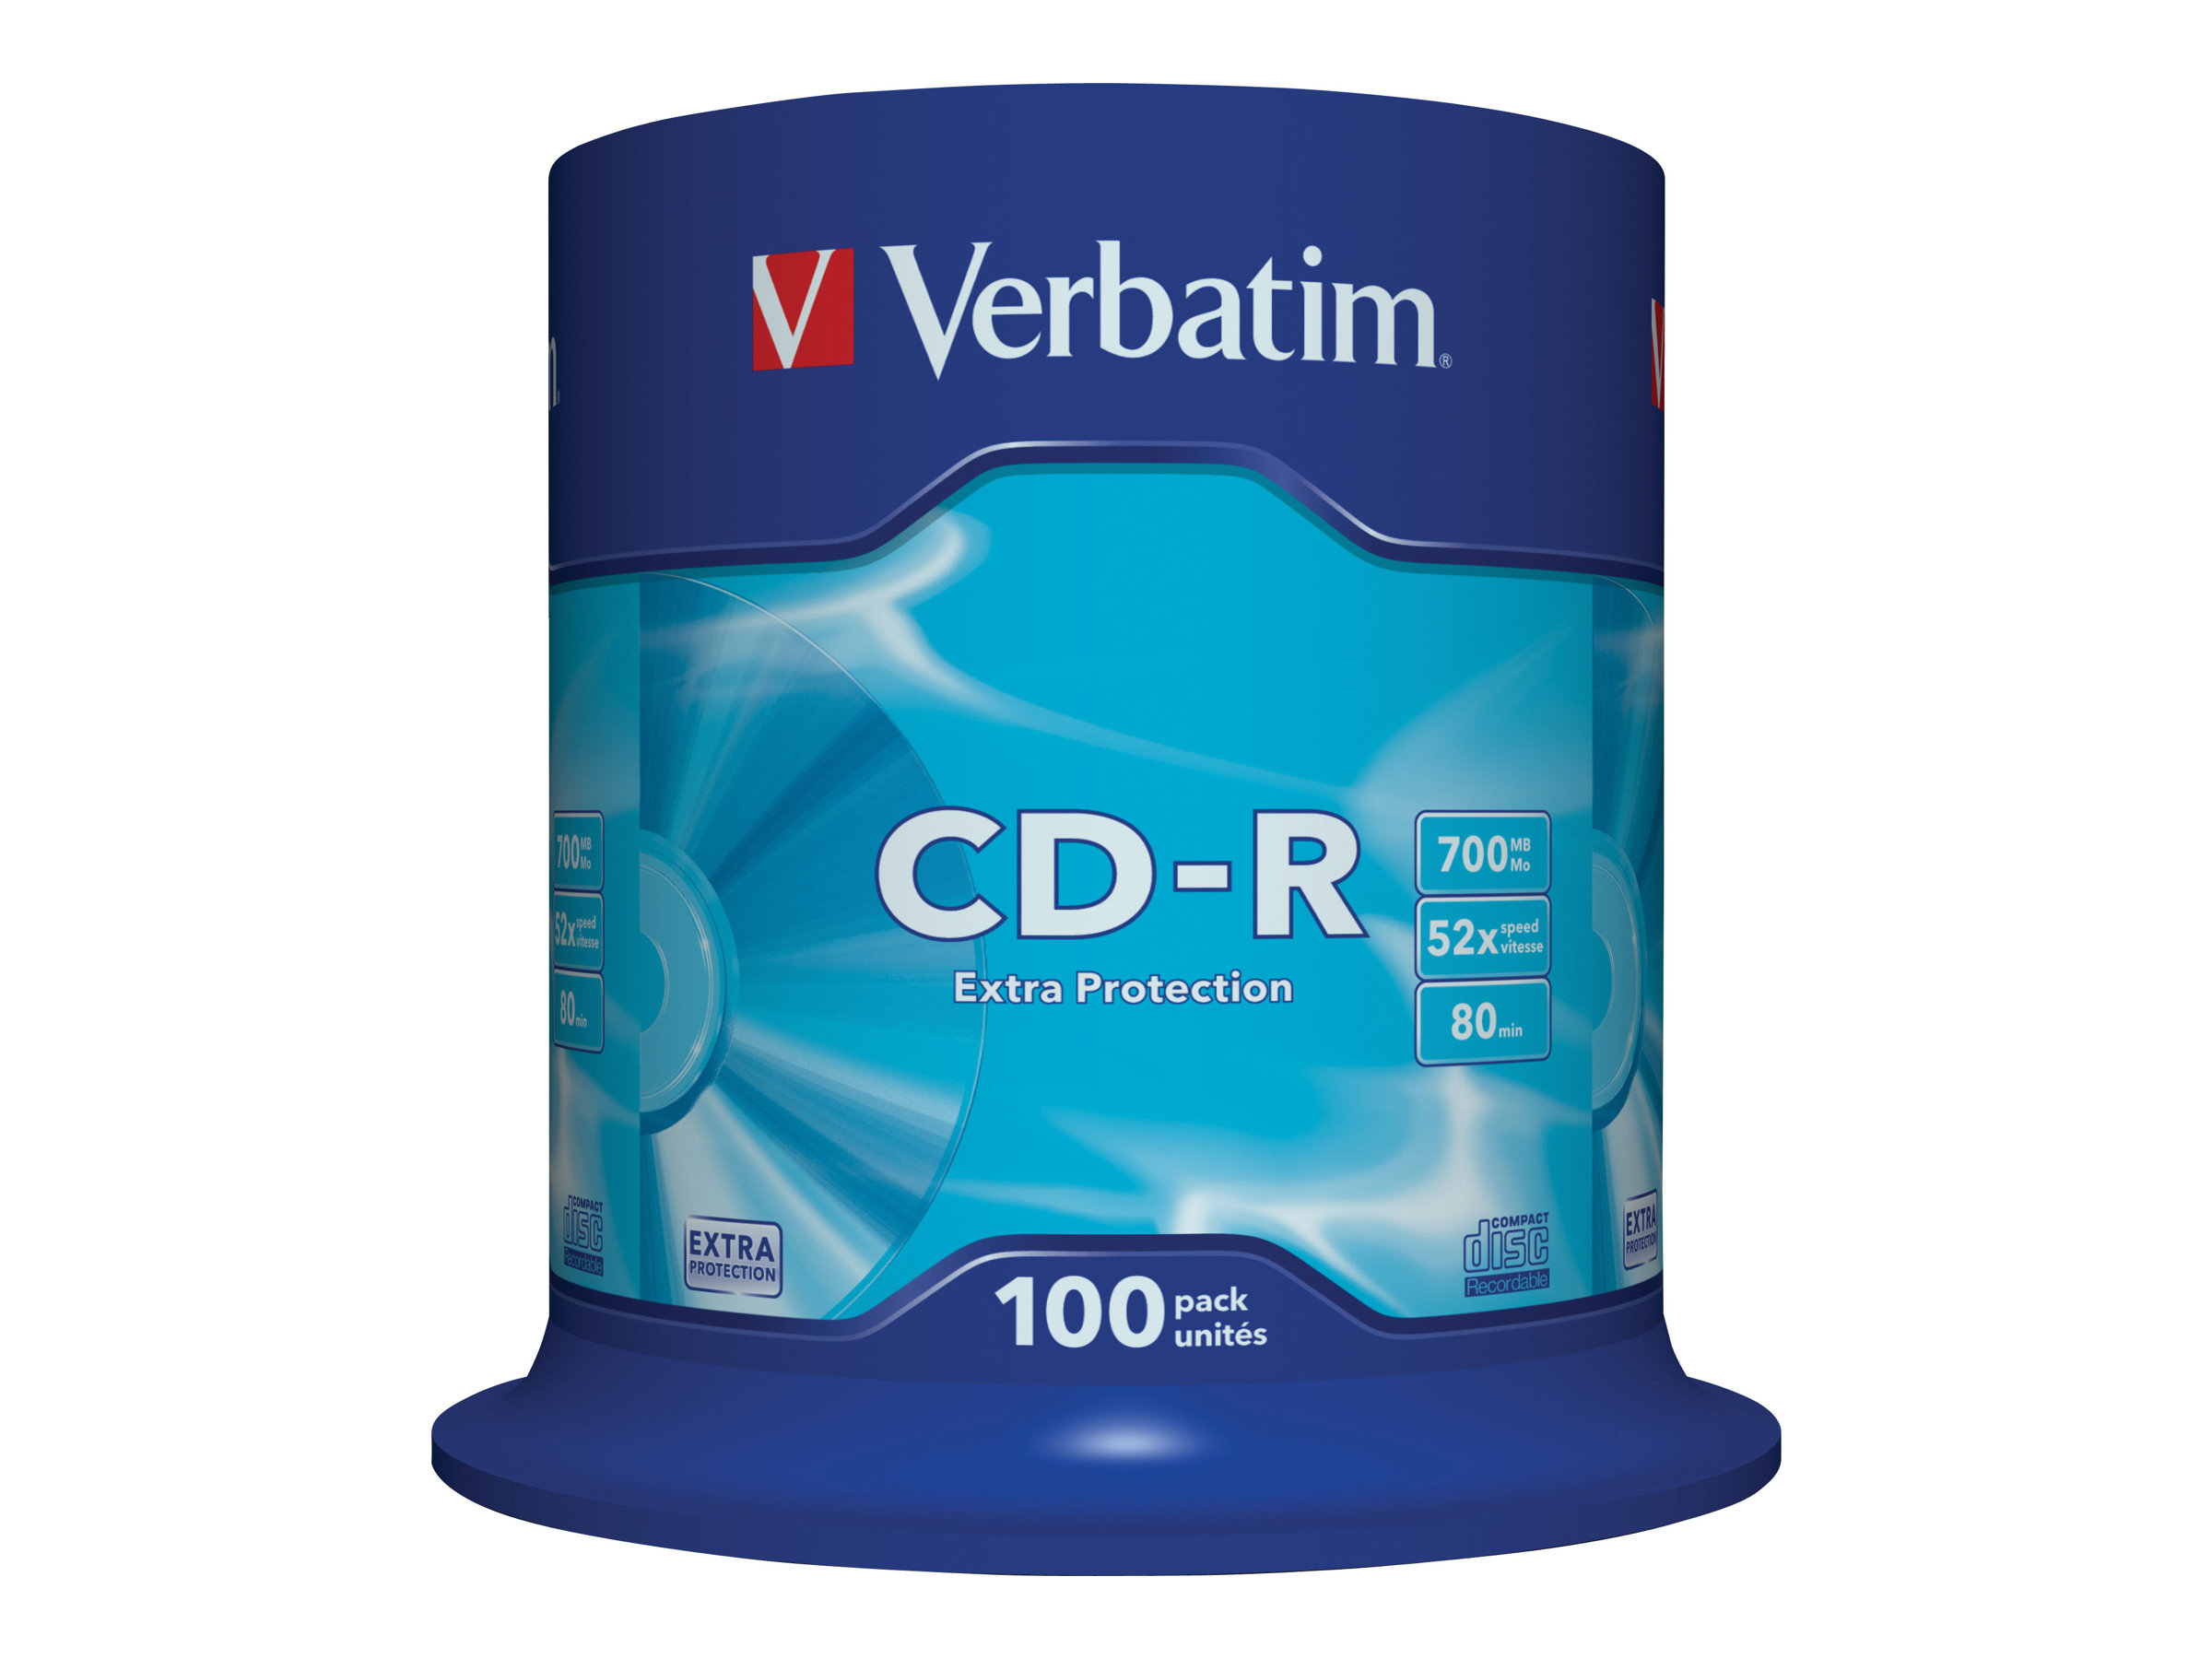 CD-R  Verbatim 700MB 100pcs Pack 52x Spindel retail